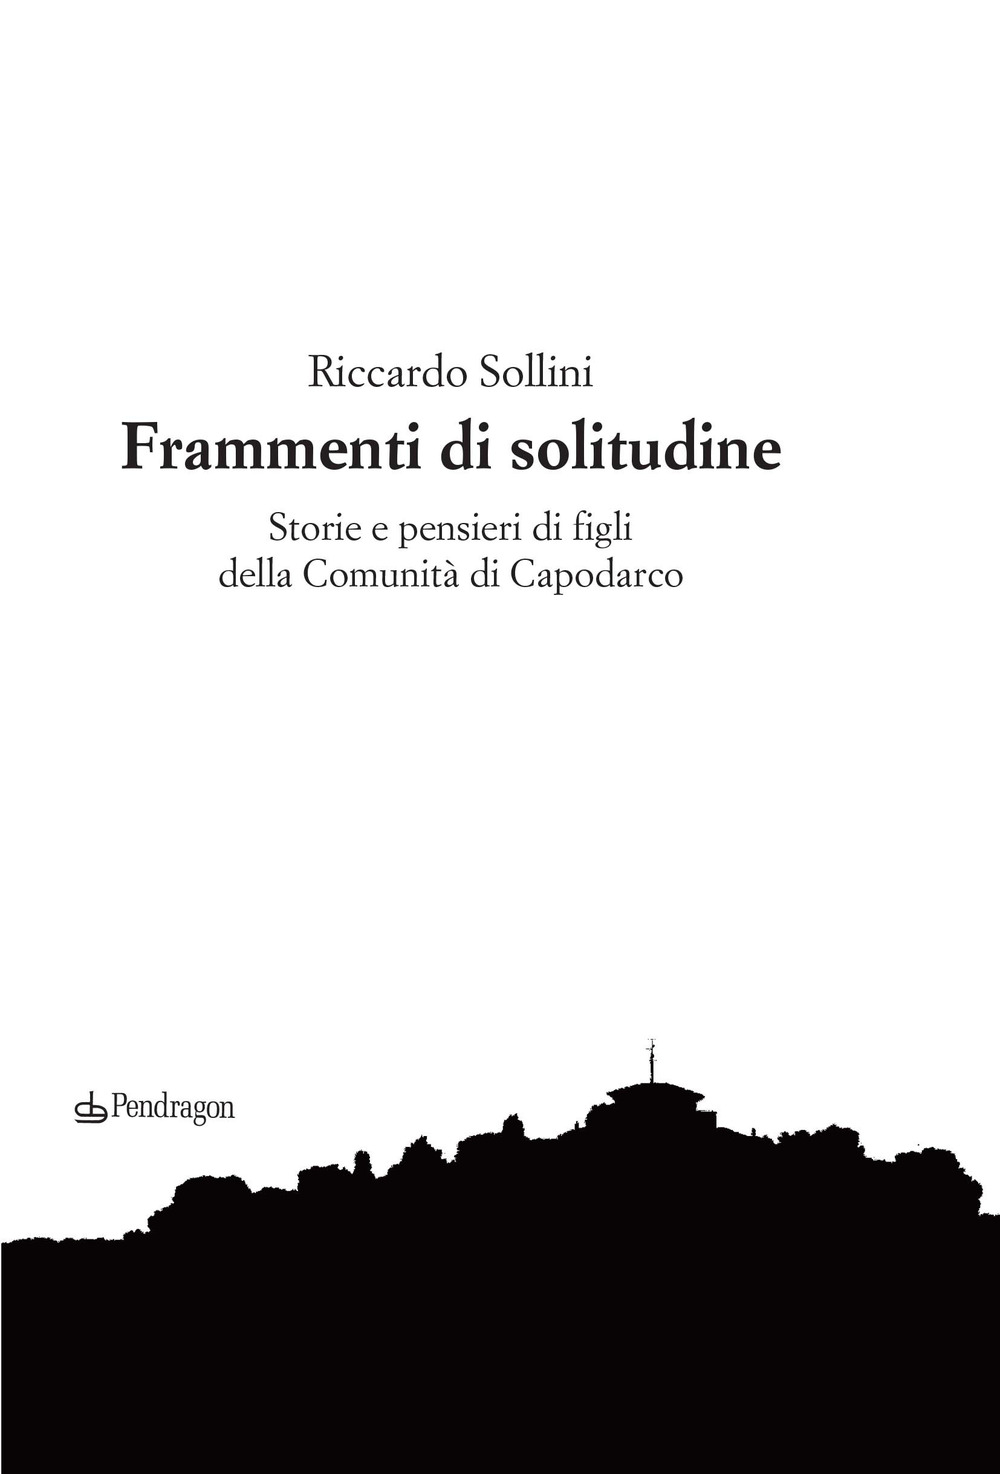 Copertina del libro "Frammenti di solitudine" di Riccardo Sollini (Pendragon, 2020)